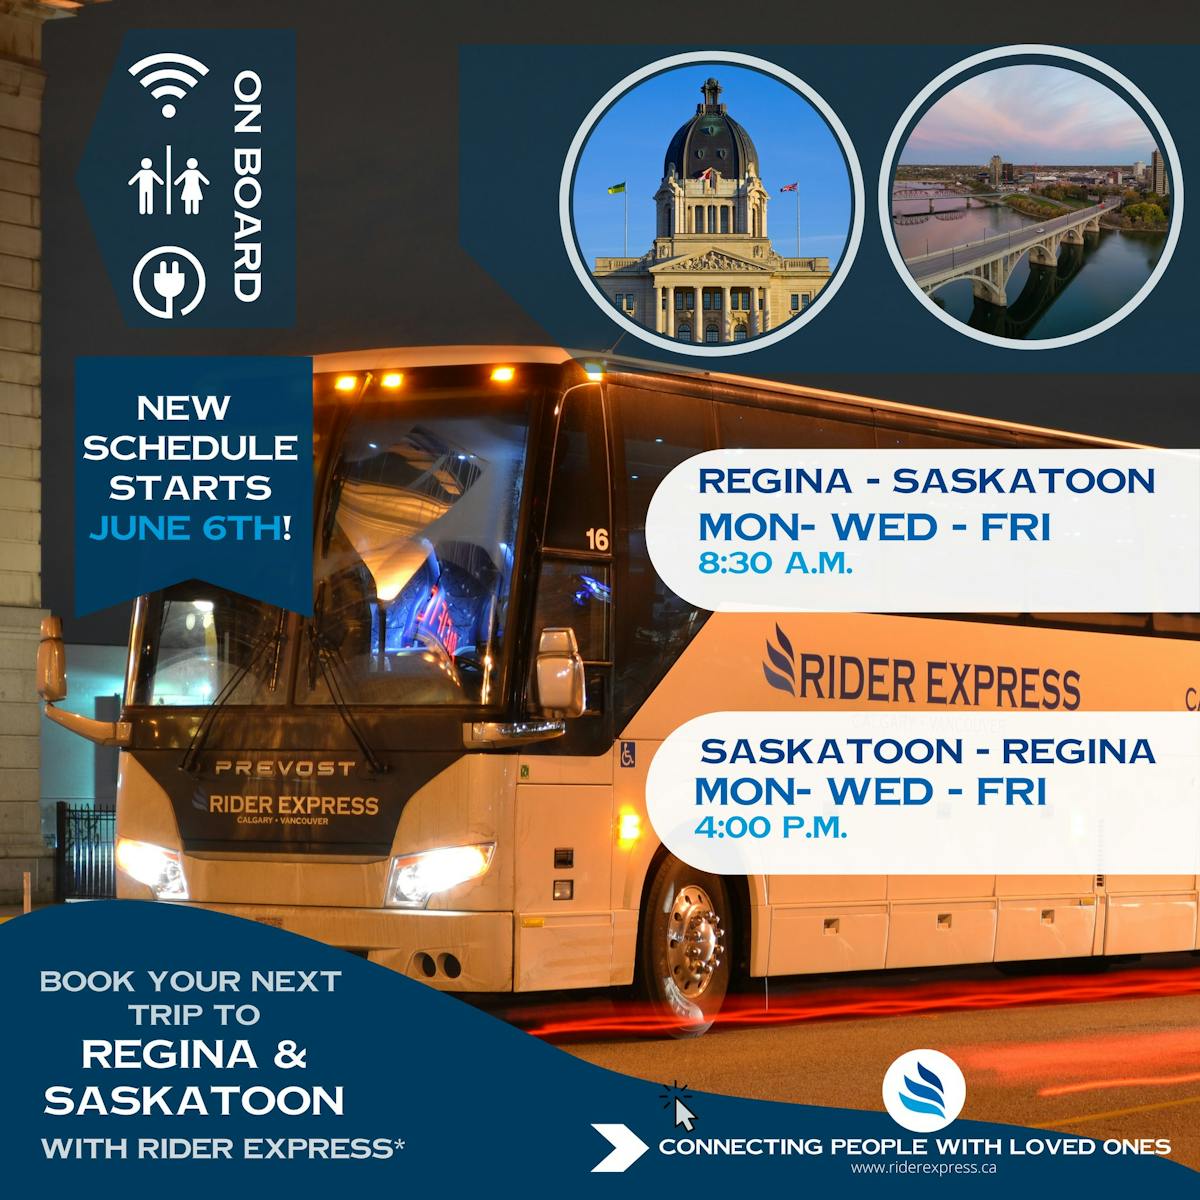 Book your nest bus trip between Saskatoon and Regina with Rider Express